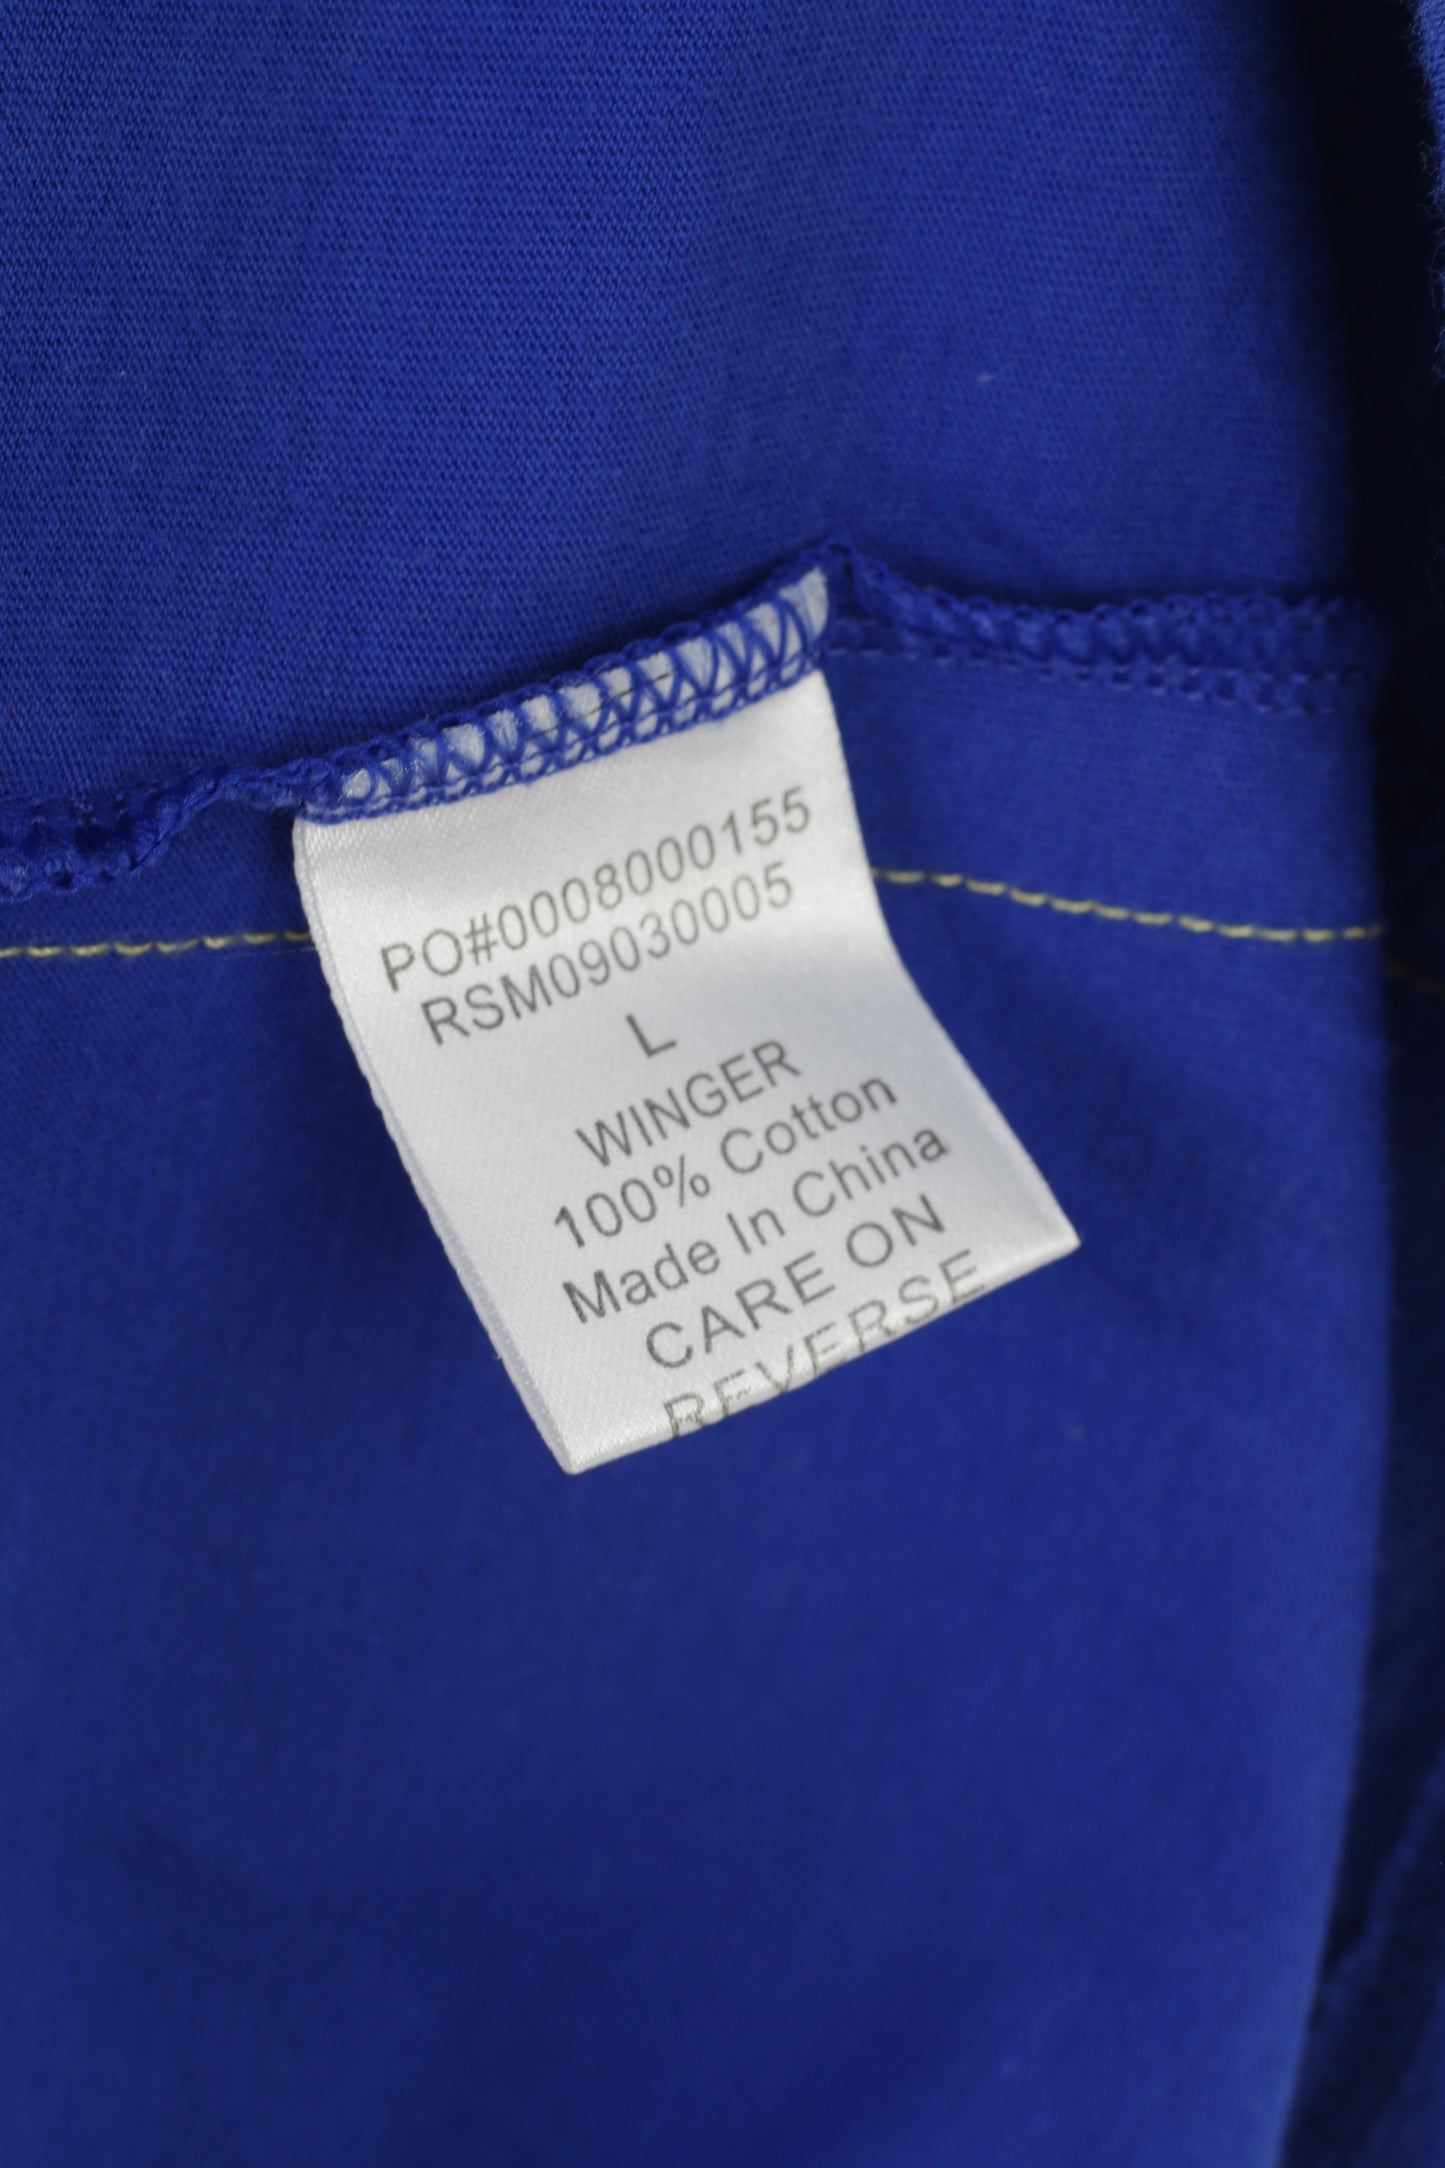 Ringspun Men L T- Shirt Crew Neck Blue Cotton Graphic Short Sleeve Vintage Top